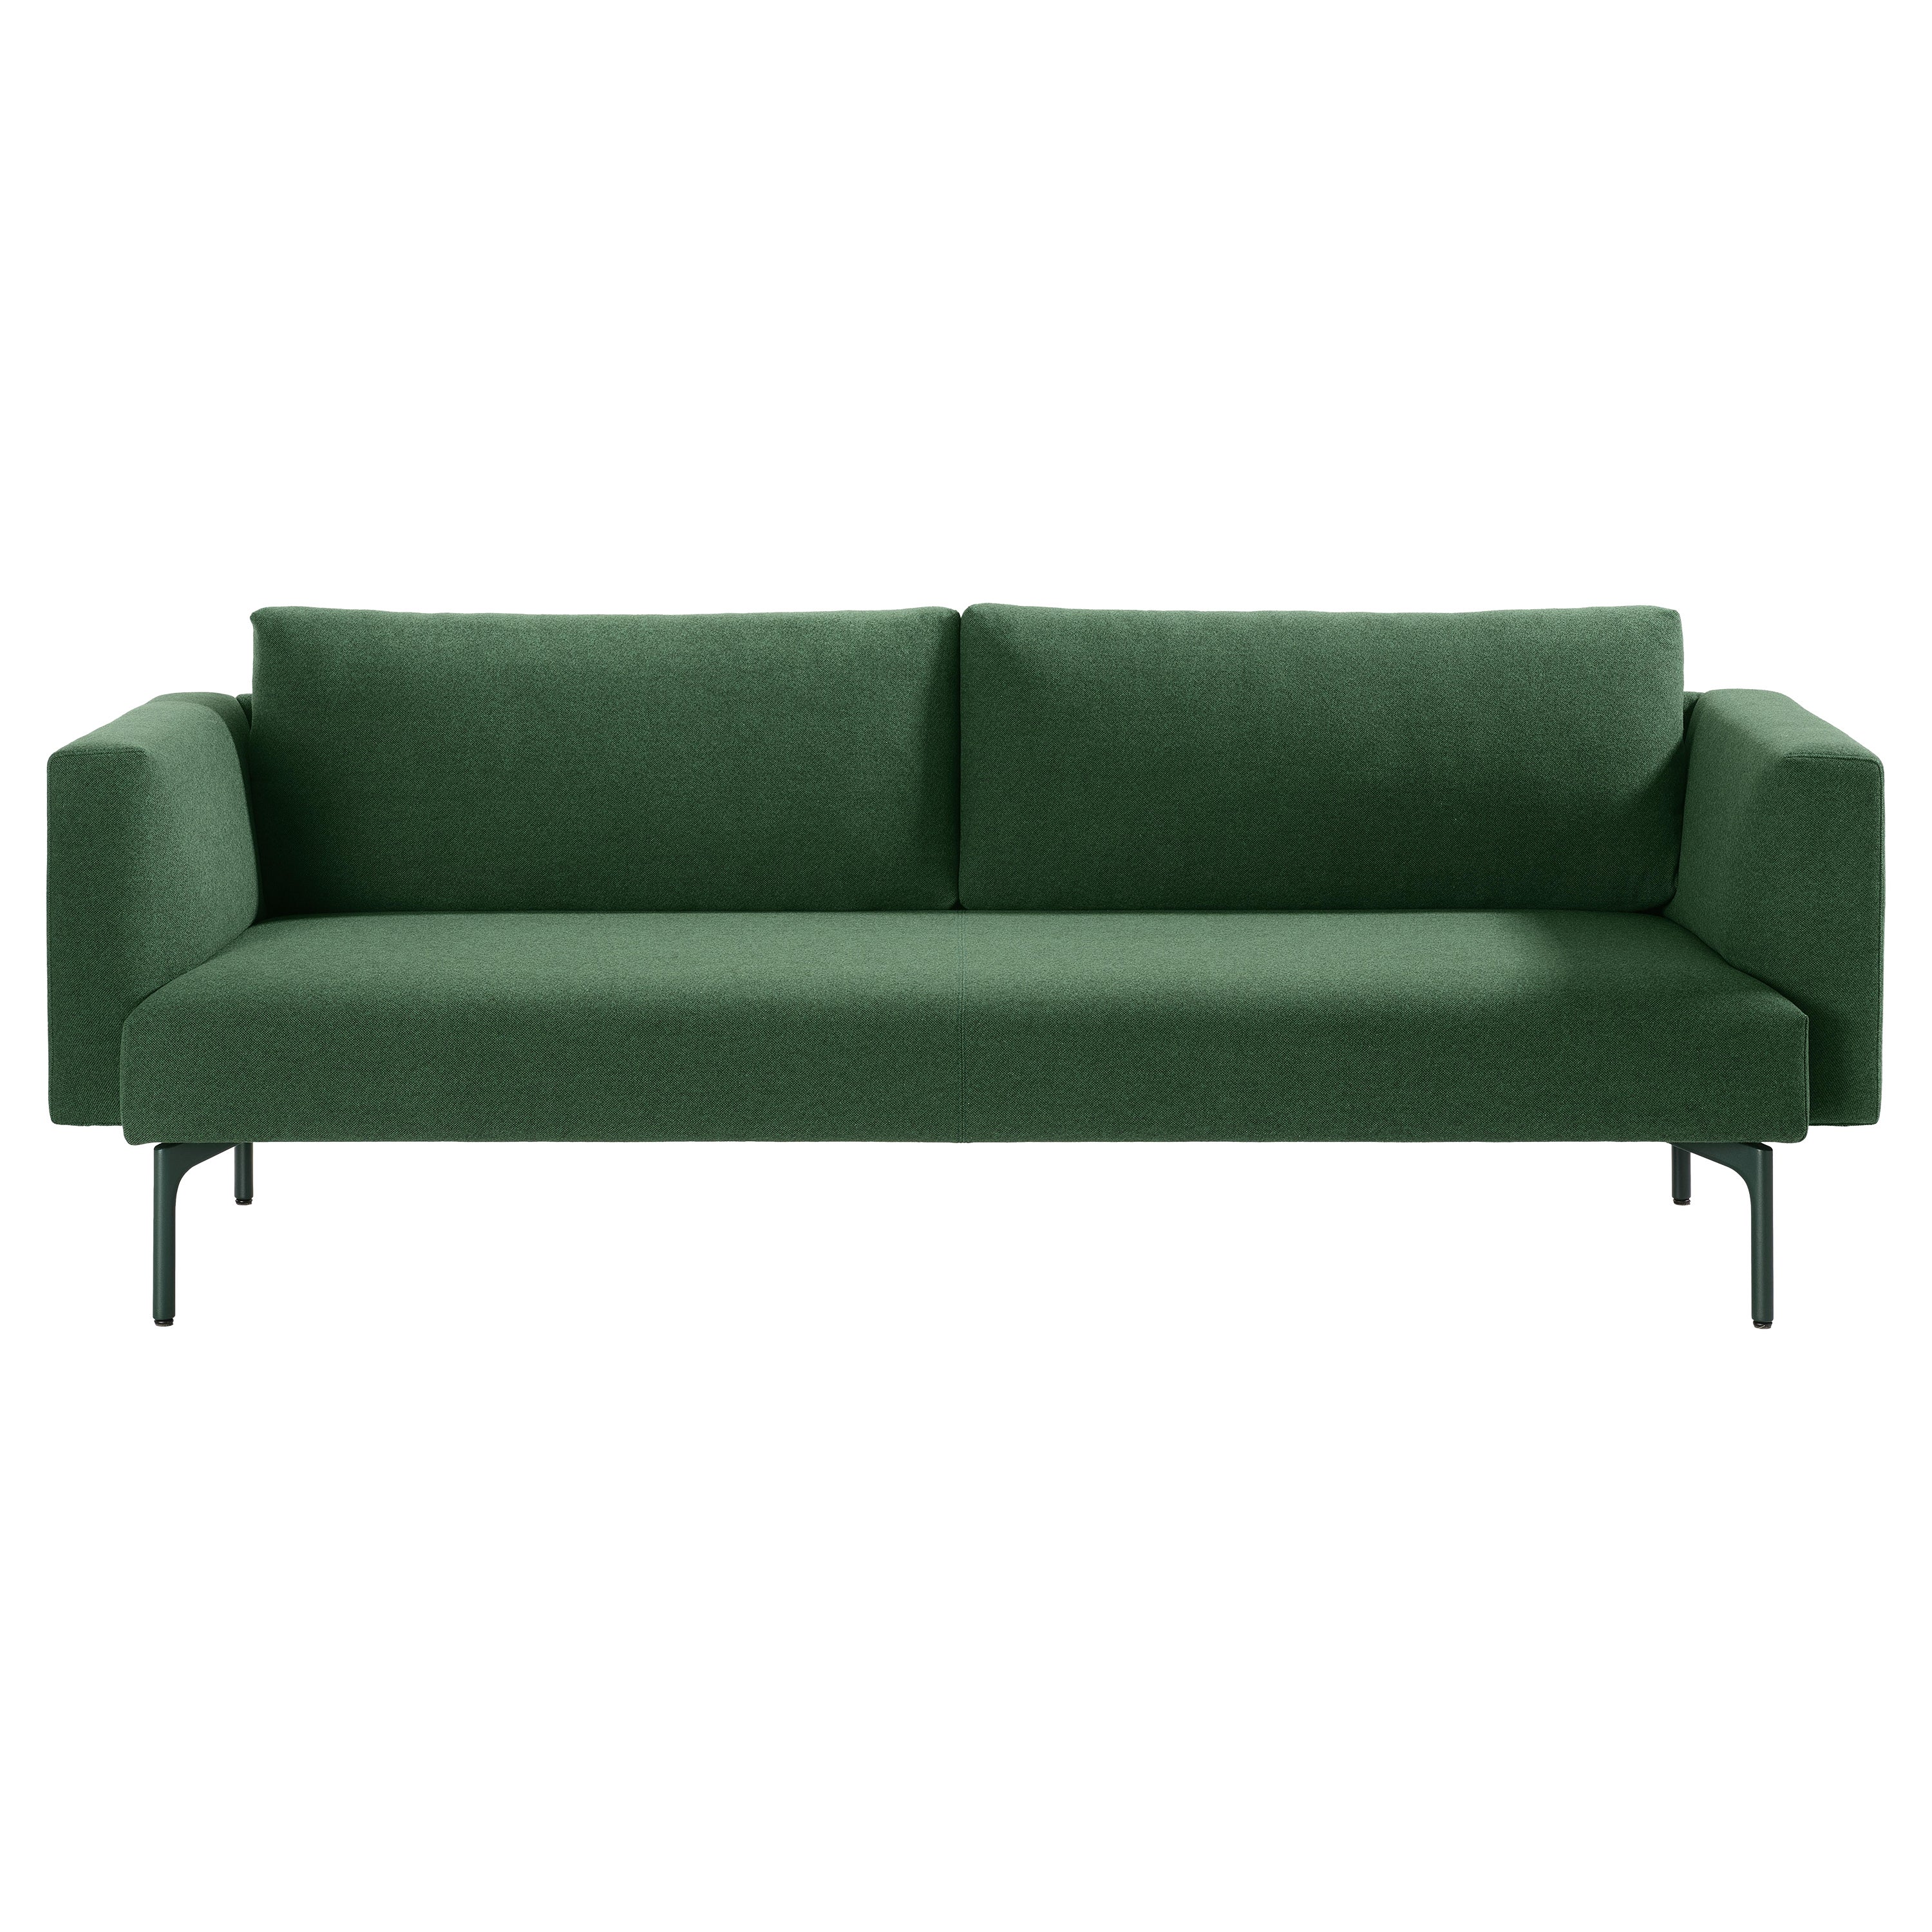 Anpassbares Arris-Sofa von Artifort Design Group